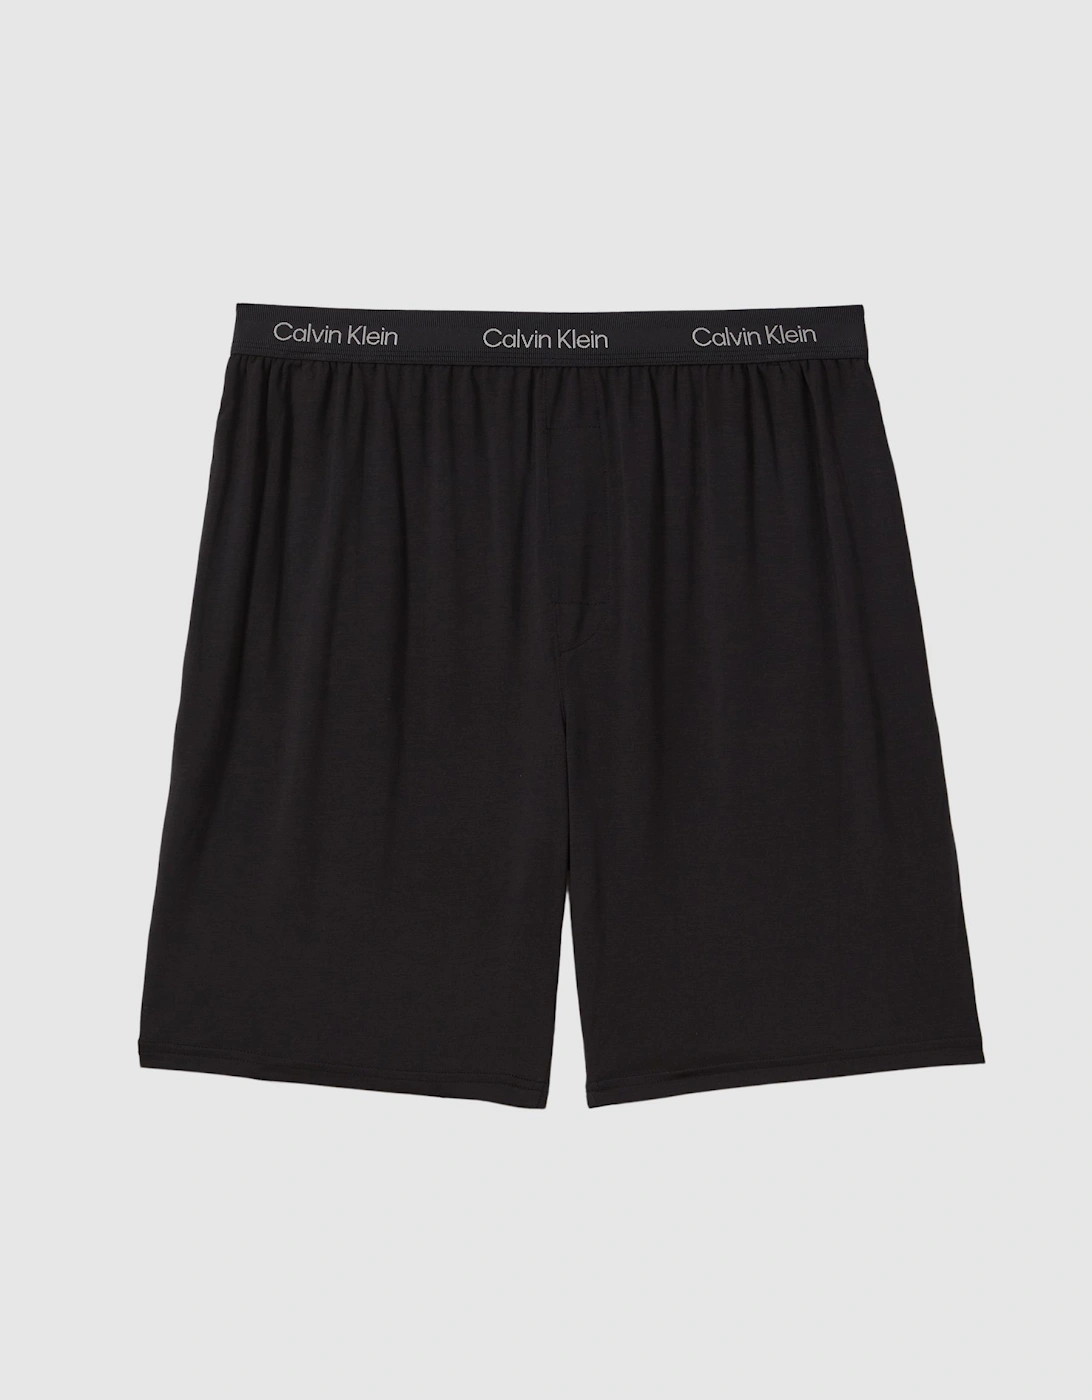 Calvin Klein Underwear Lounge Elasticated Shorts, 2 of 1